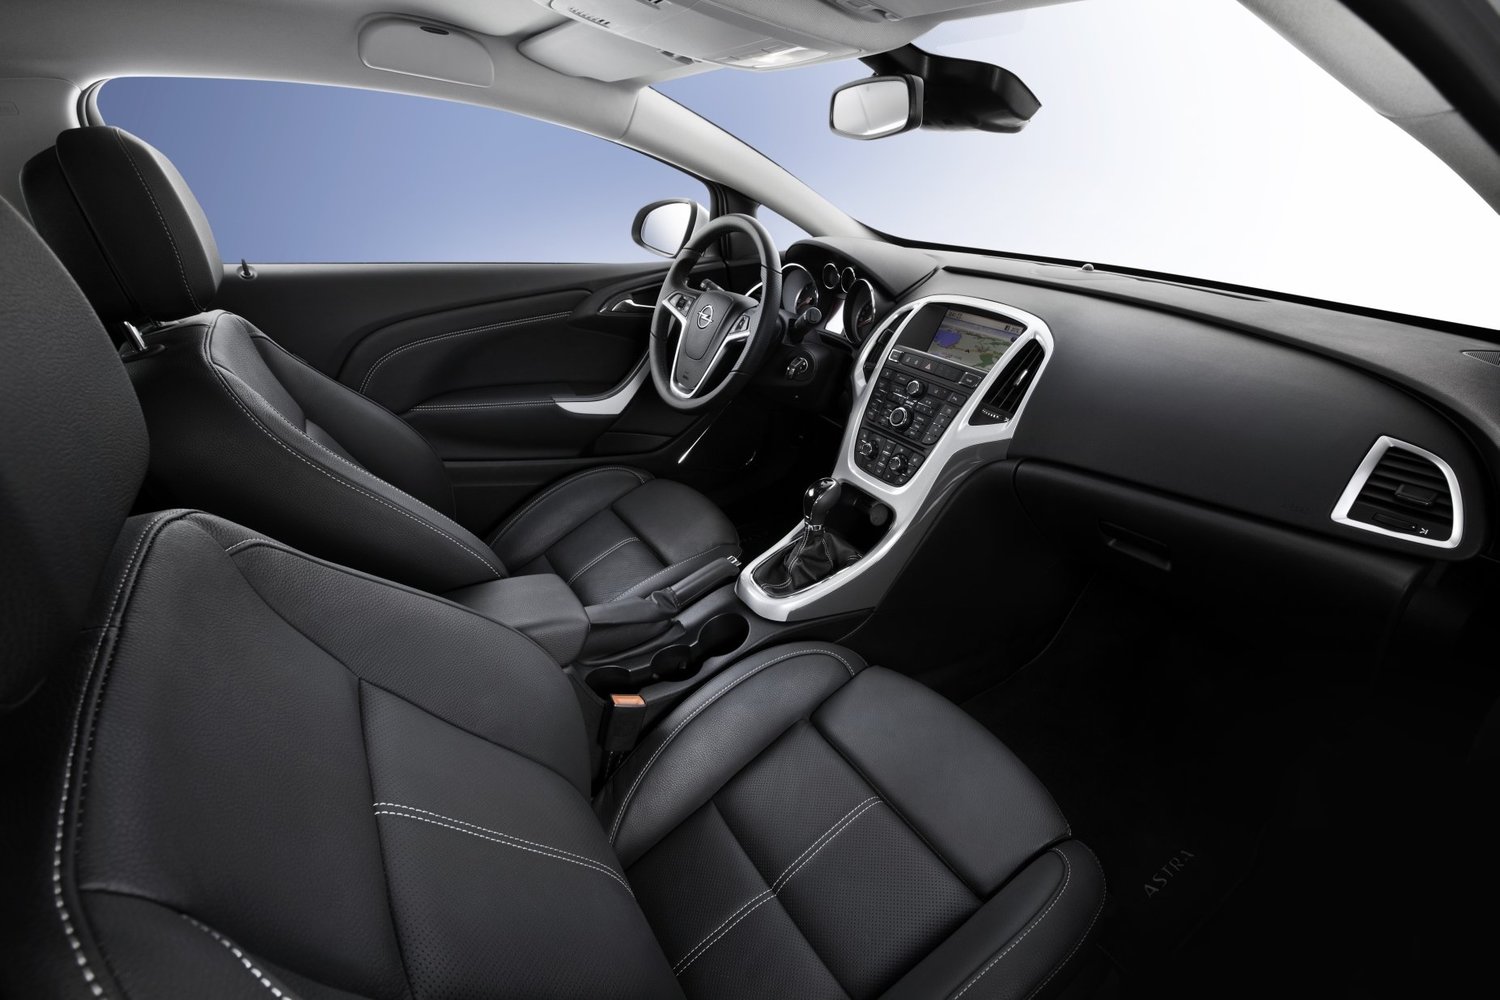 хэтчбек 3 дв. GTC Opel Astra 2012 - 2016г выпуска модификация 1.4 MT (100 л.с.)